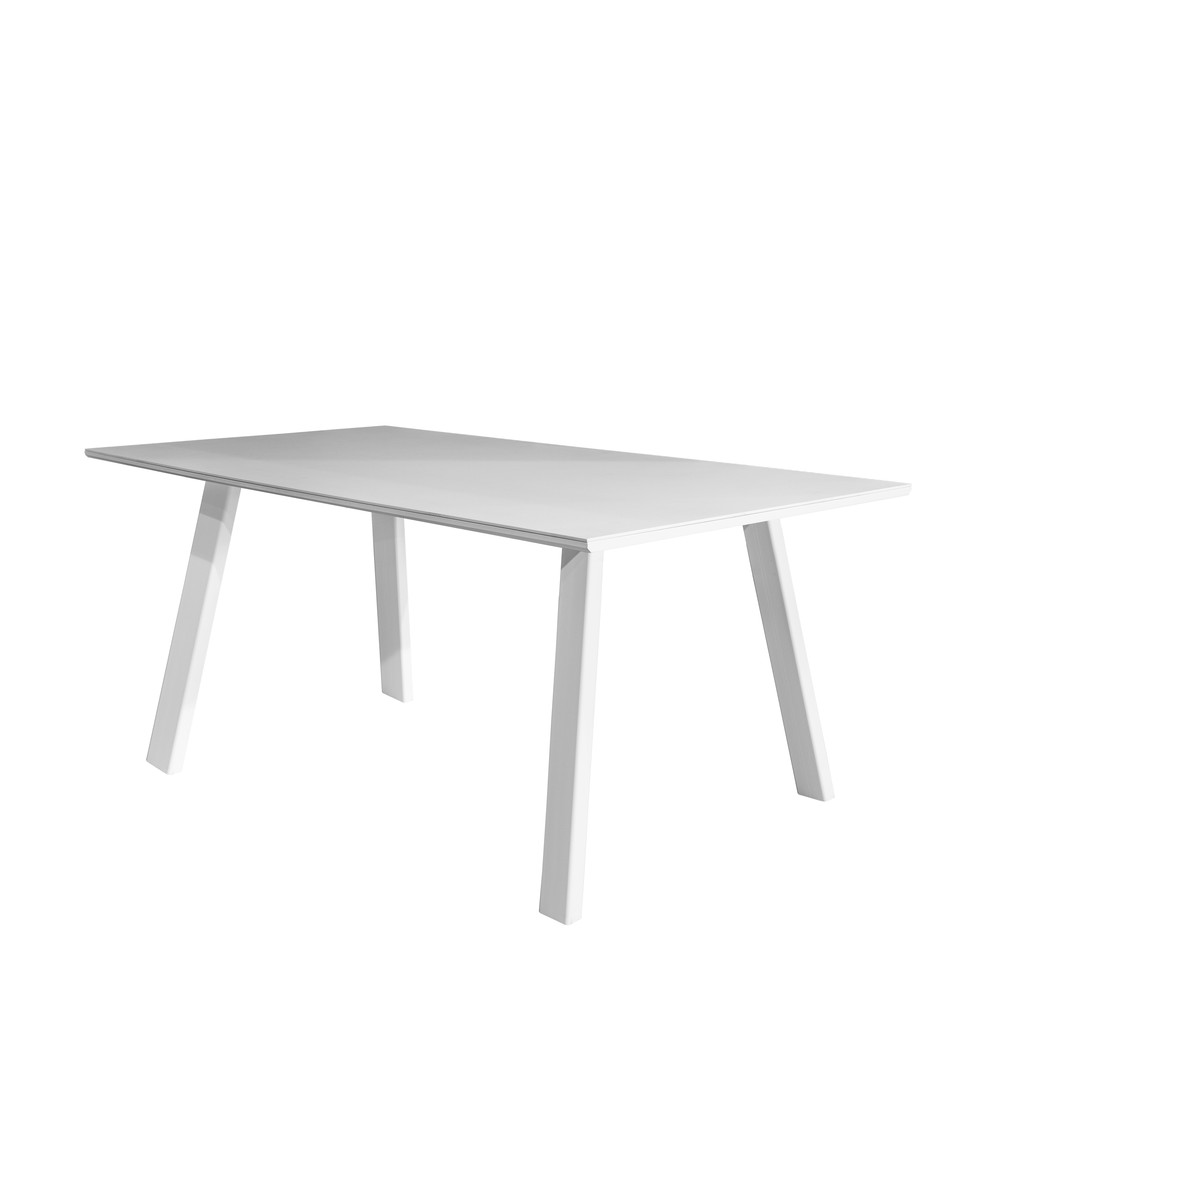   Table Spisa T07 Easy rectangle  160x100x75cm